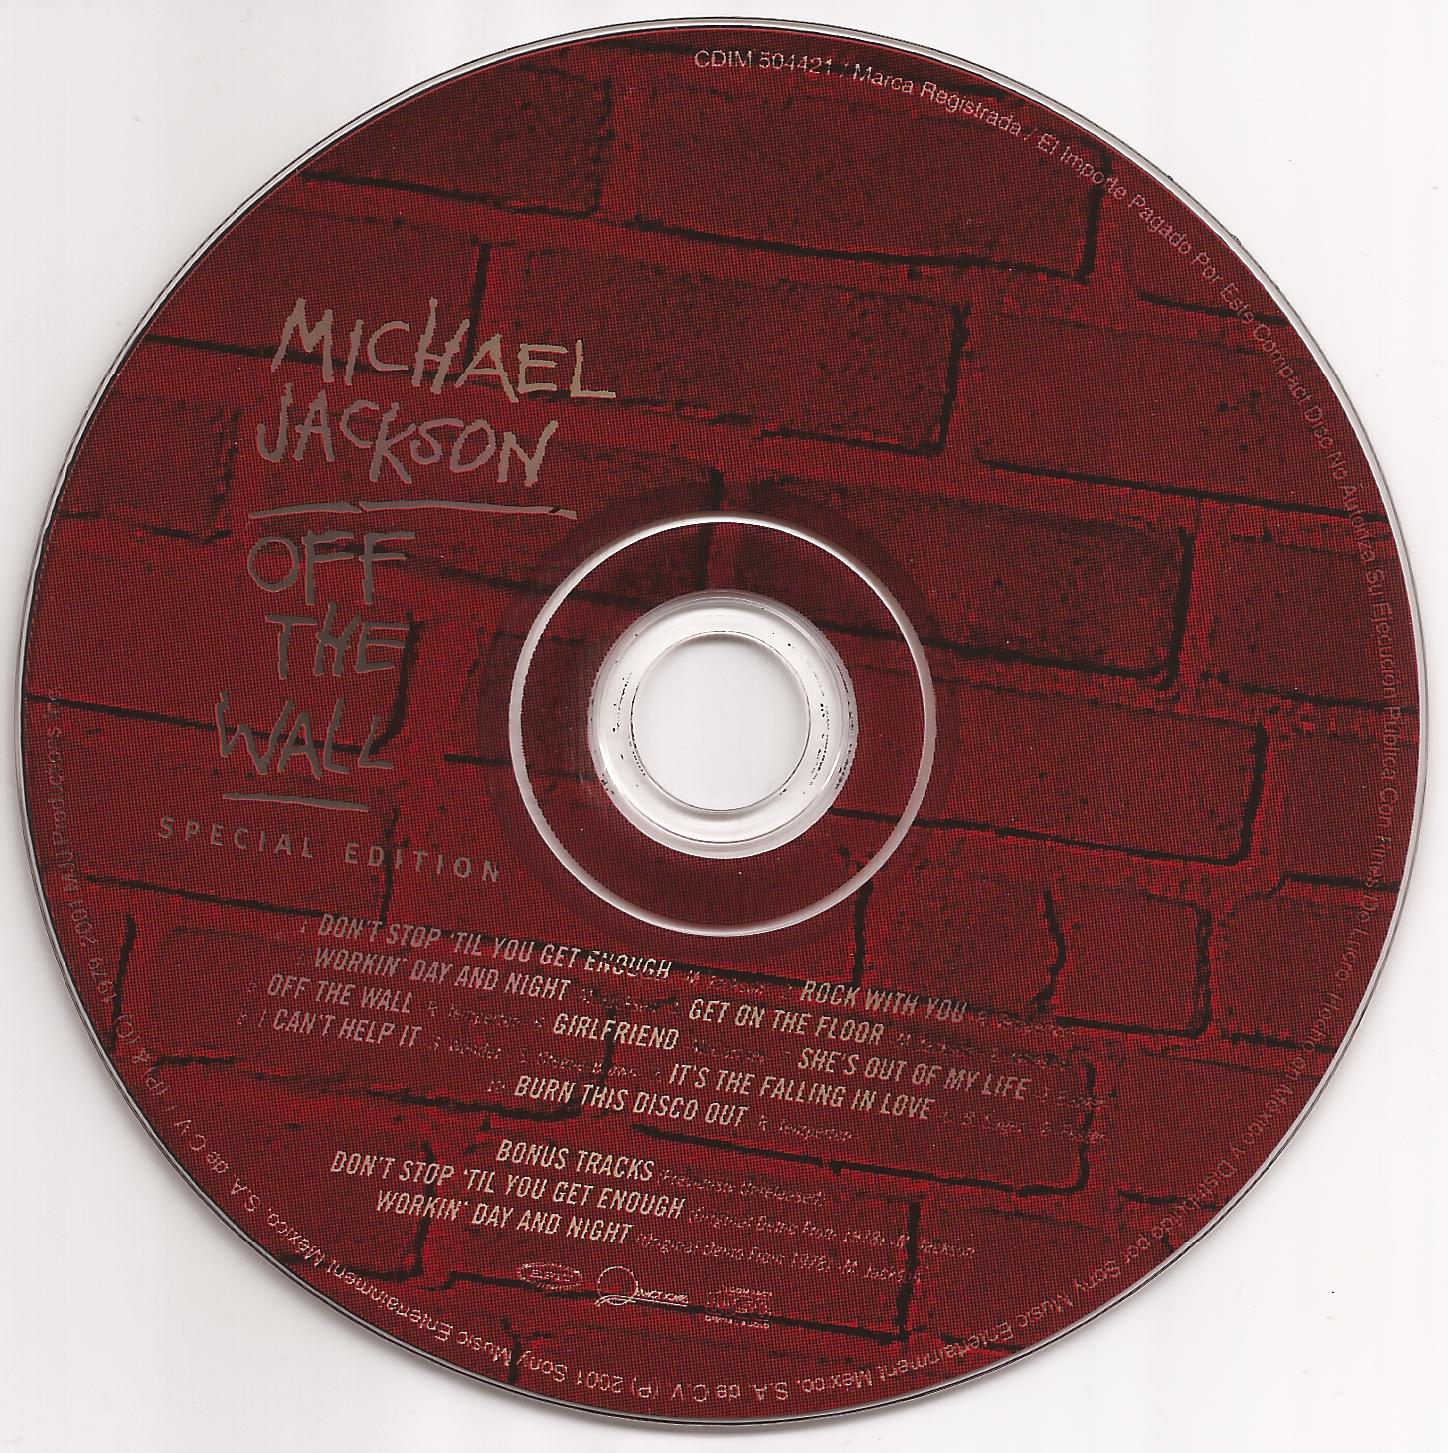 http://4.bp.blogspot.com/-LsMC8nFGA3E/TqYviBmJj5I/AAAAAAAAAlw/eCQCZsonYCo/s1600/Cd+Michael+Jackson+Off+The+Wall.jpg